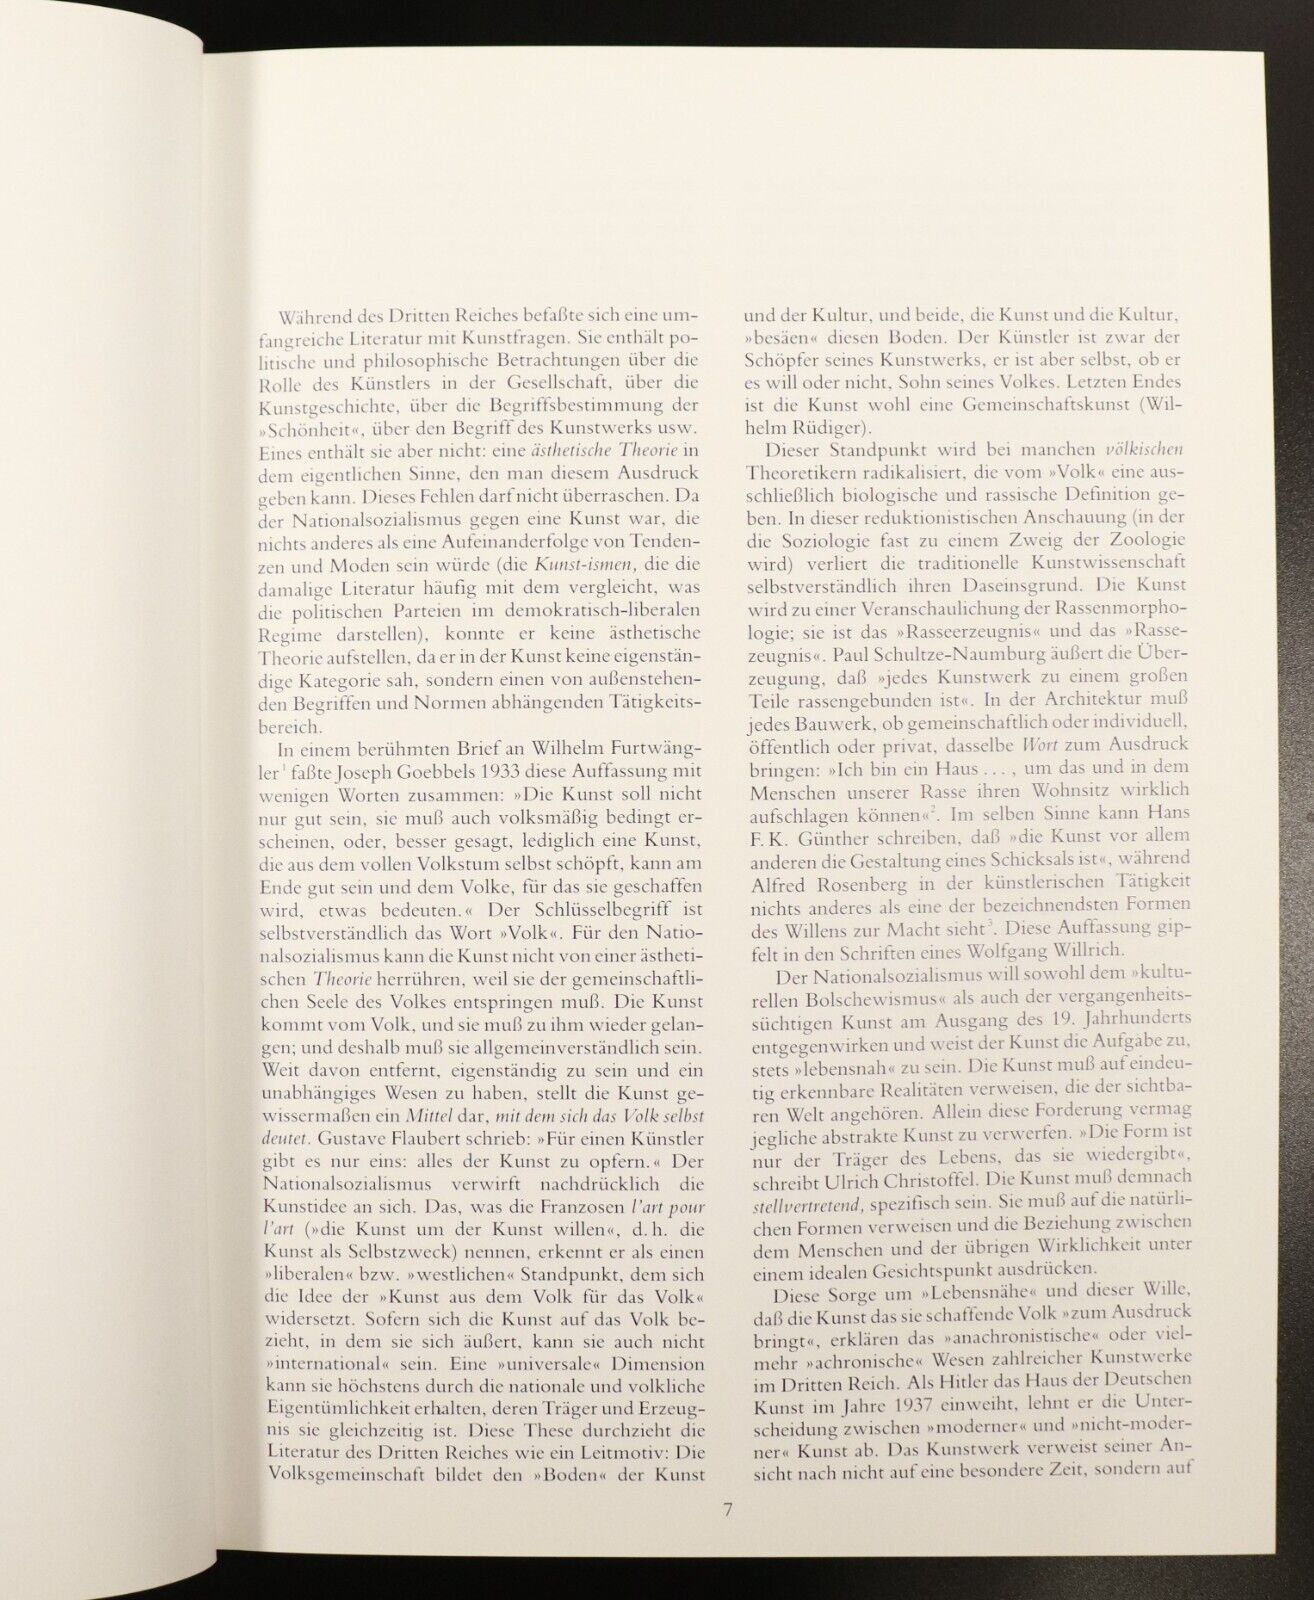 1988 Kunst In Deutschland 1933 - 1945 by M.G. Davidson German Art Reference Book